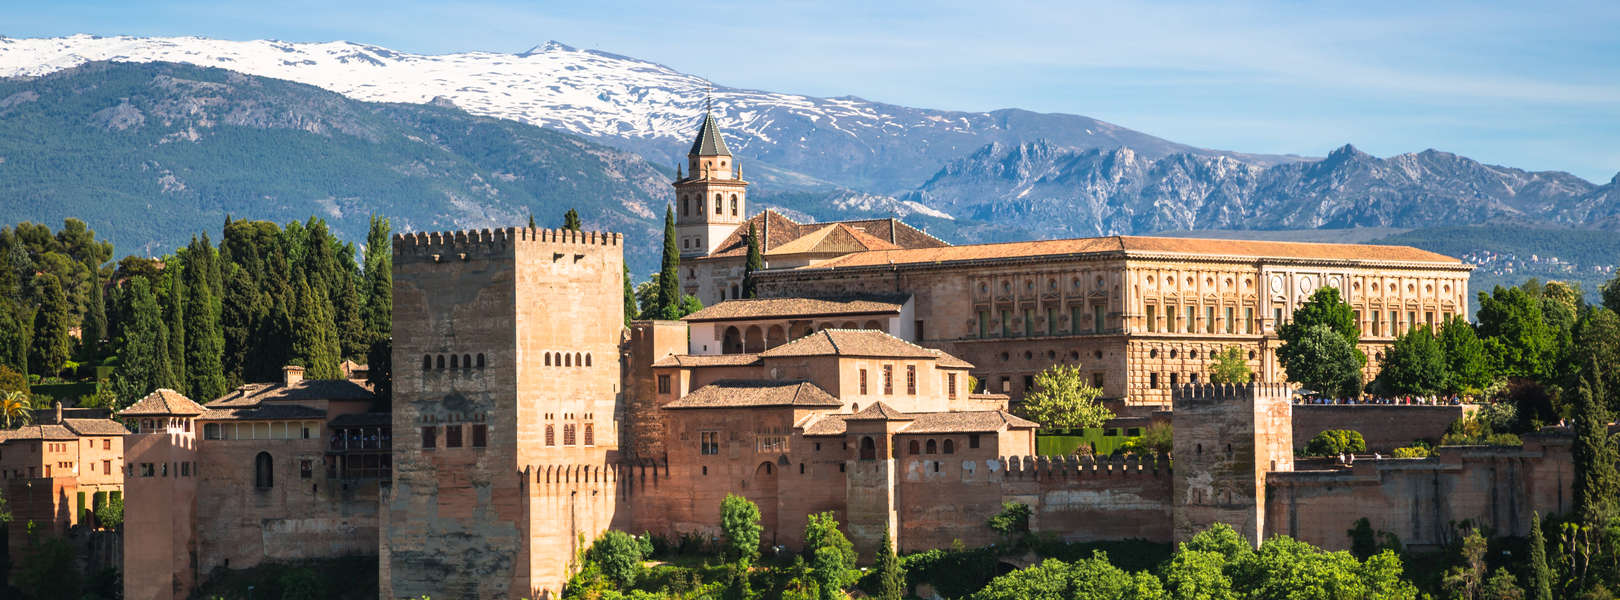 Die Befestigungsanlage Alhambra in Granada Spanien